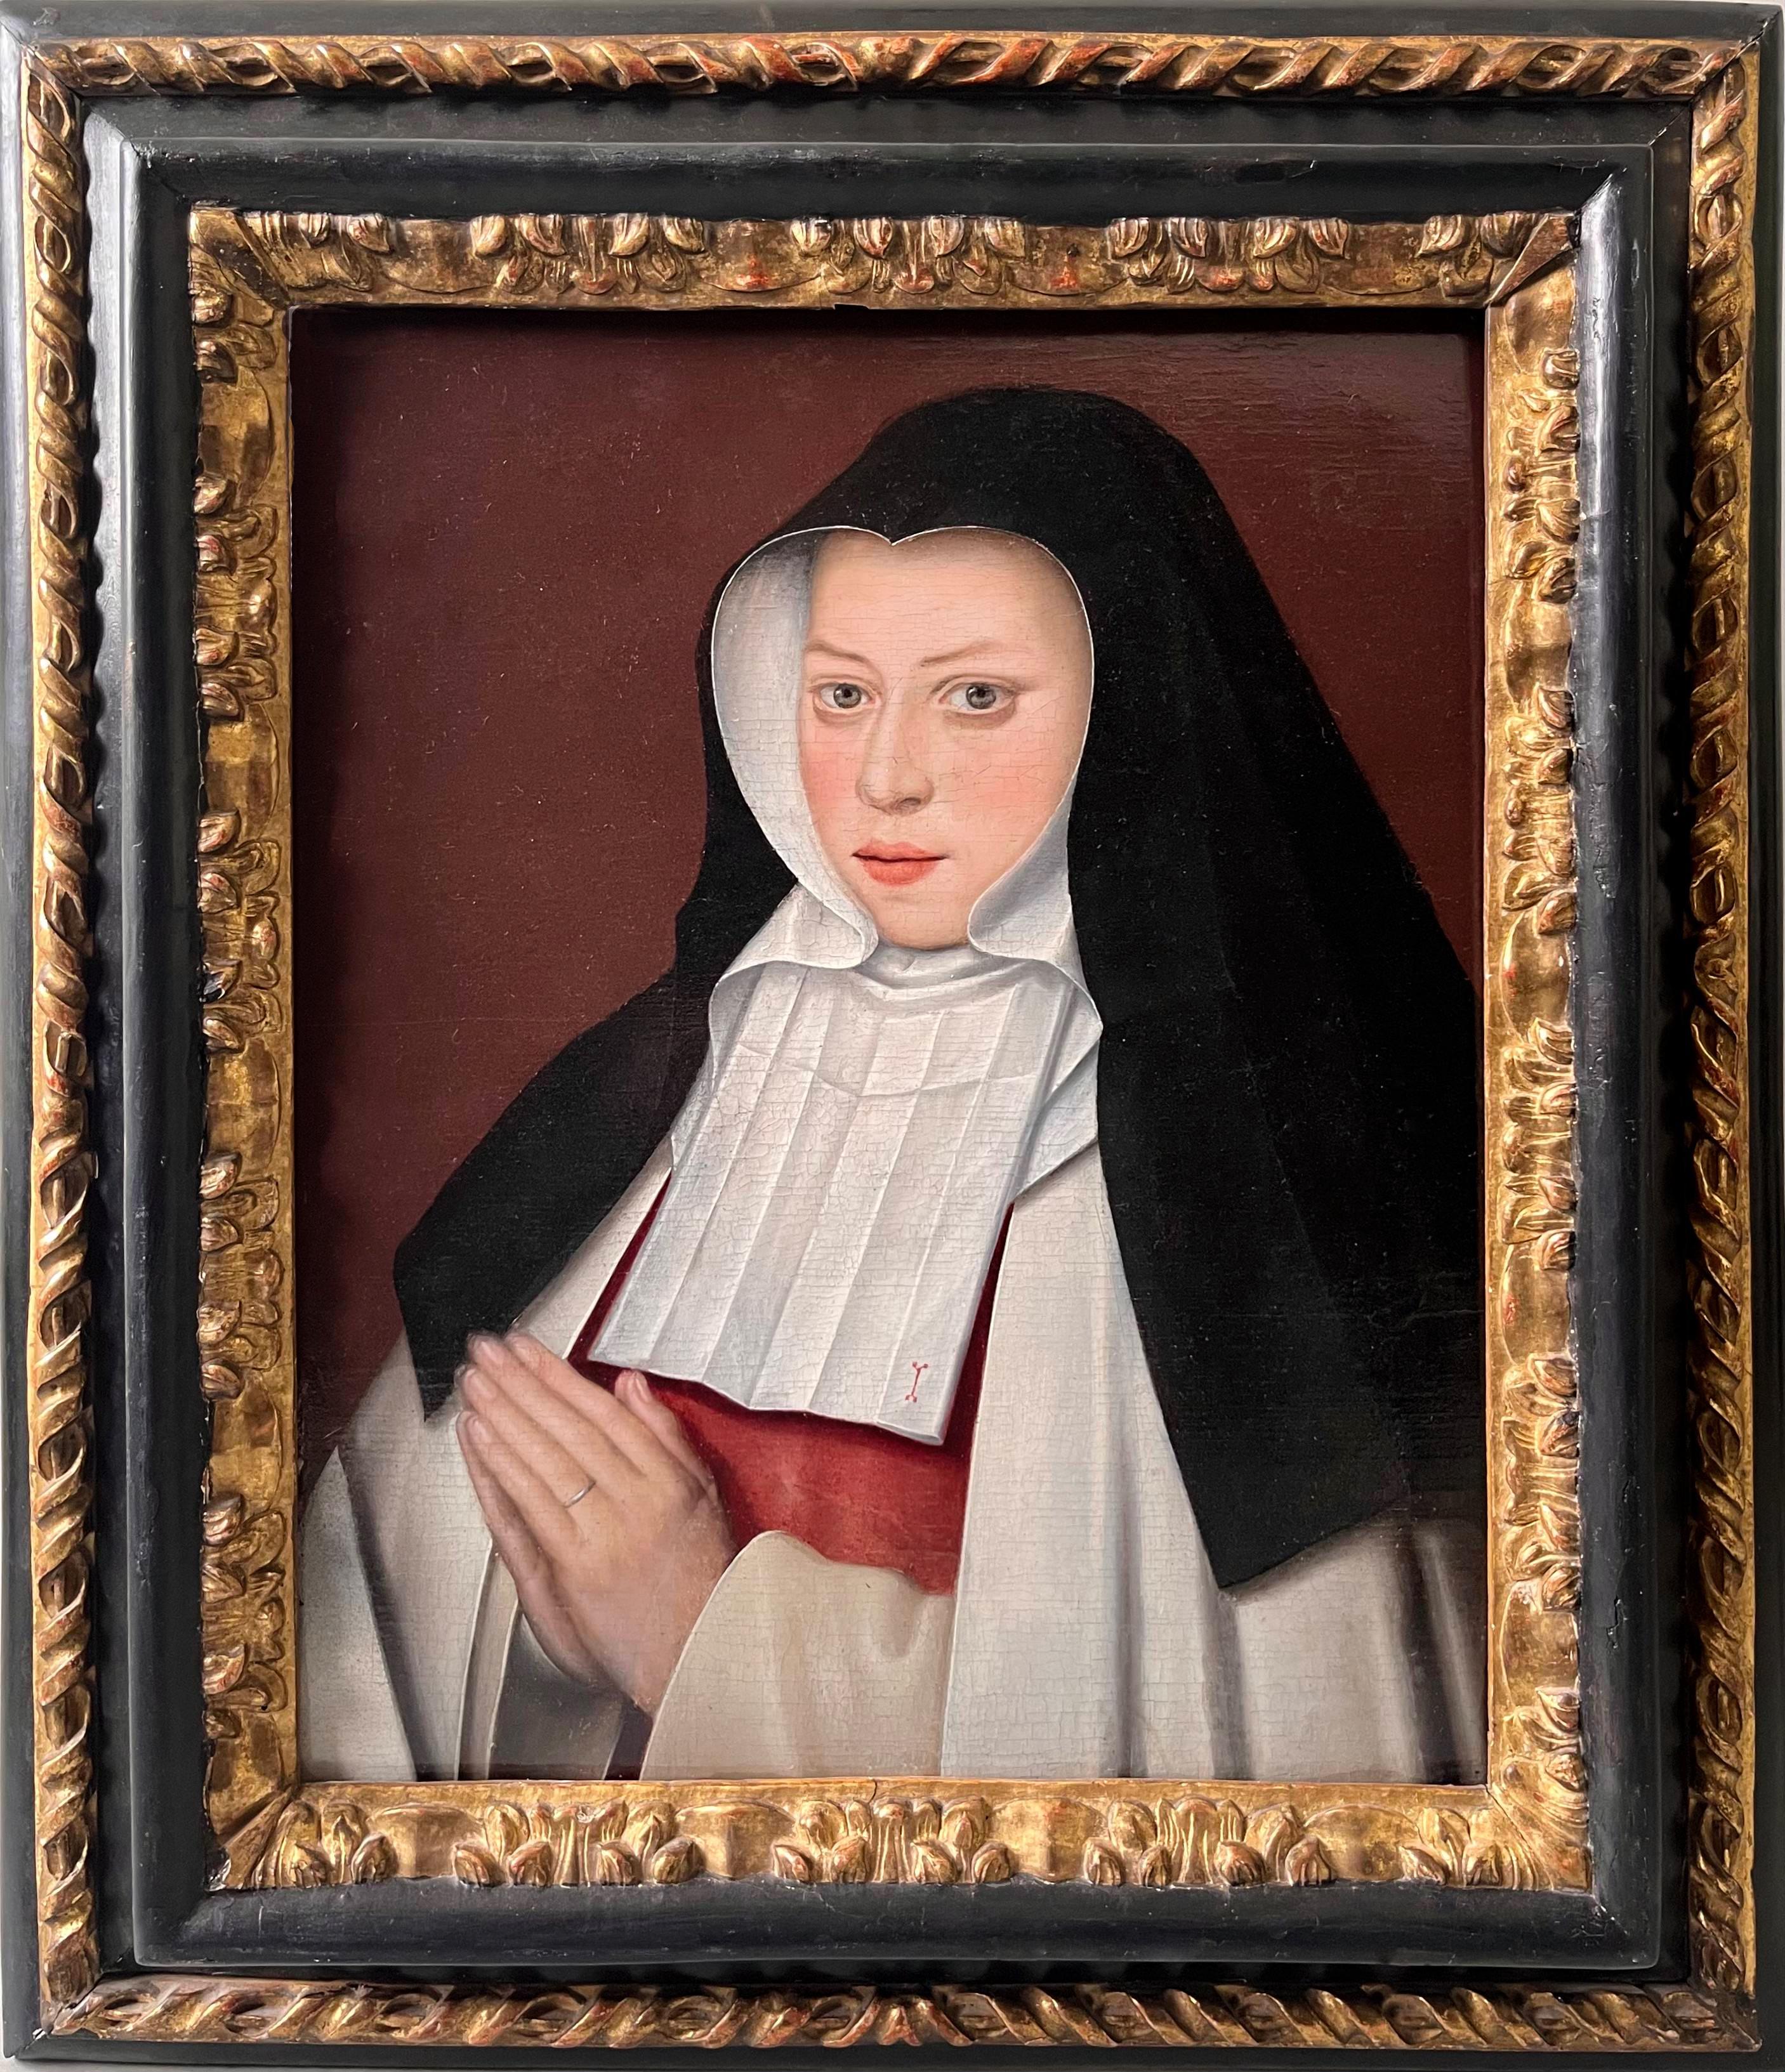 Altes Meistergemälde einer Nun aus dem 16. Jahrhundert – Königin Jeanne de France